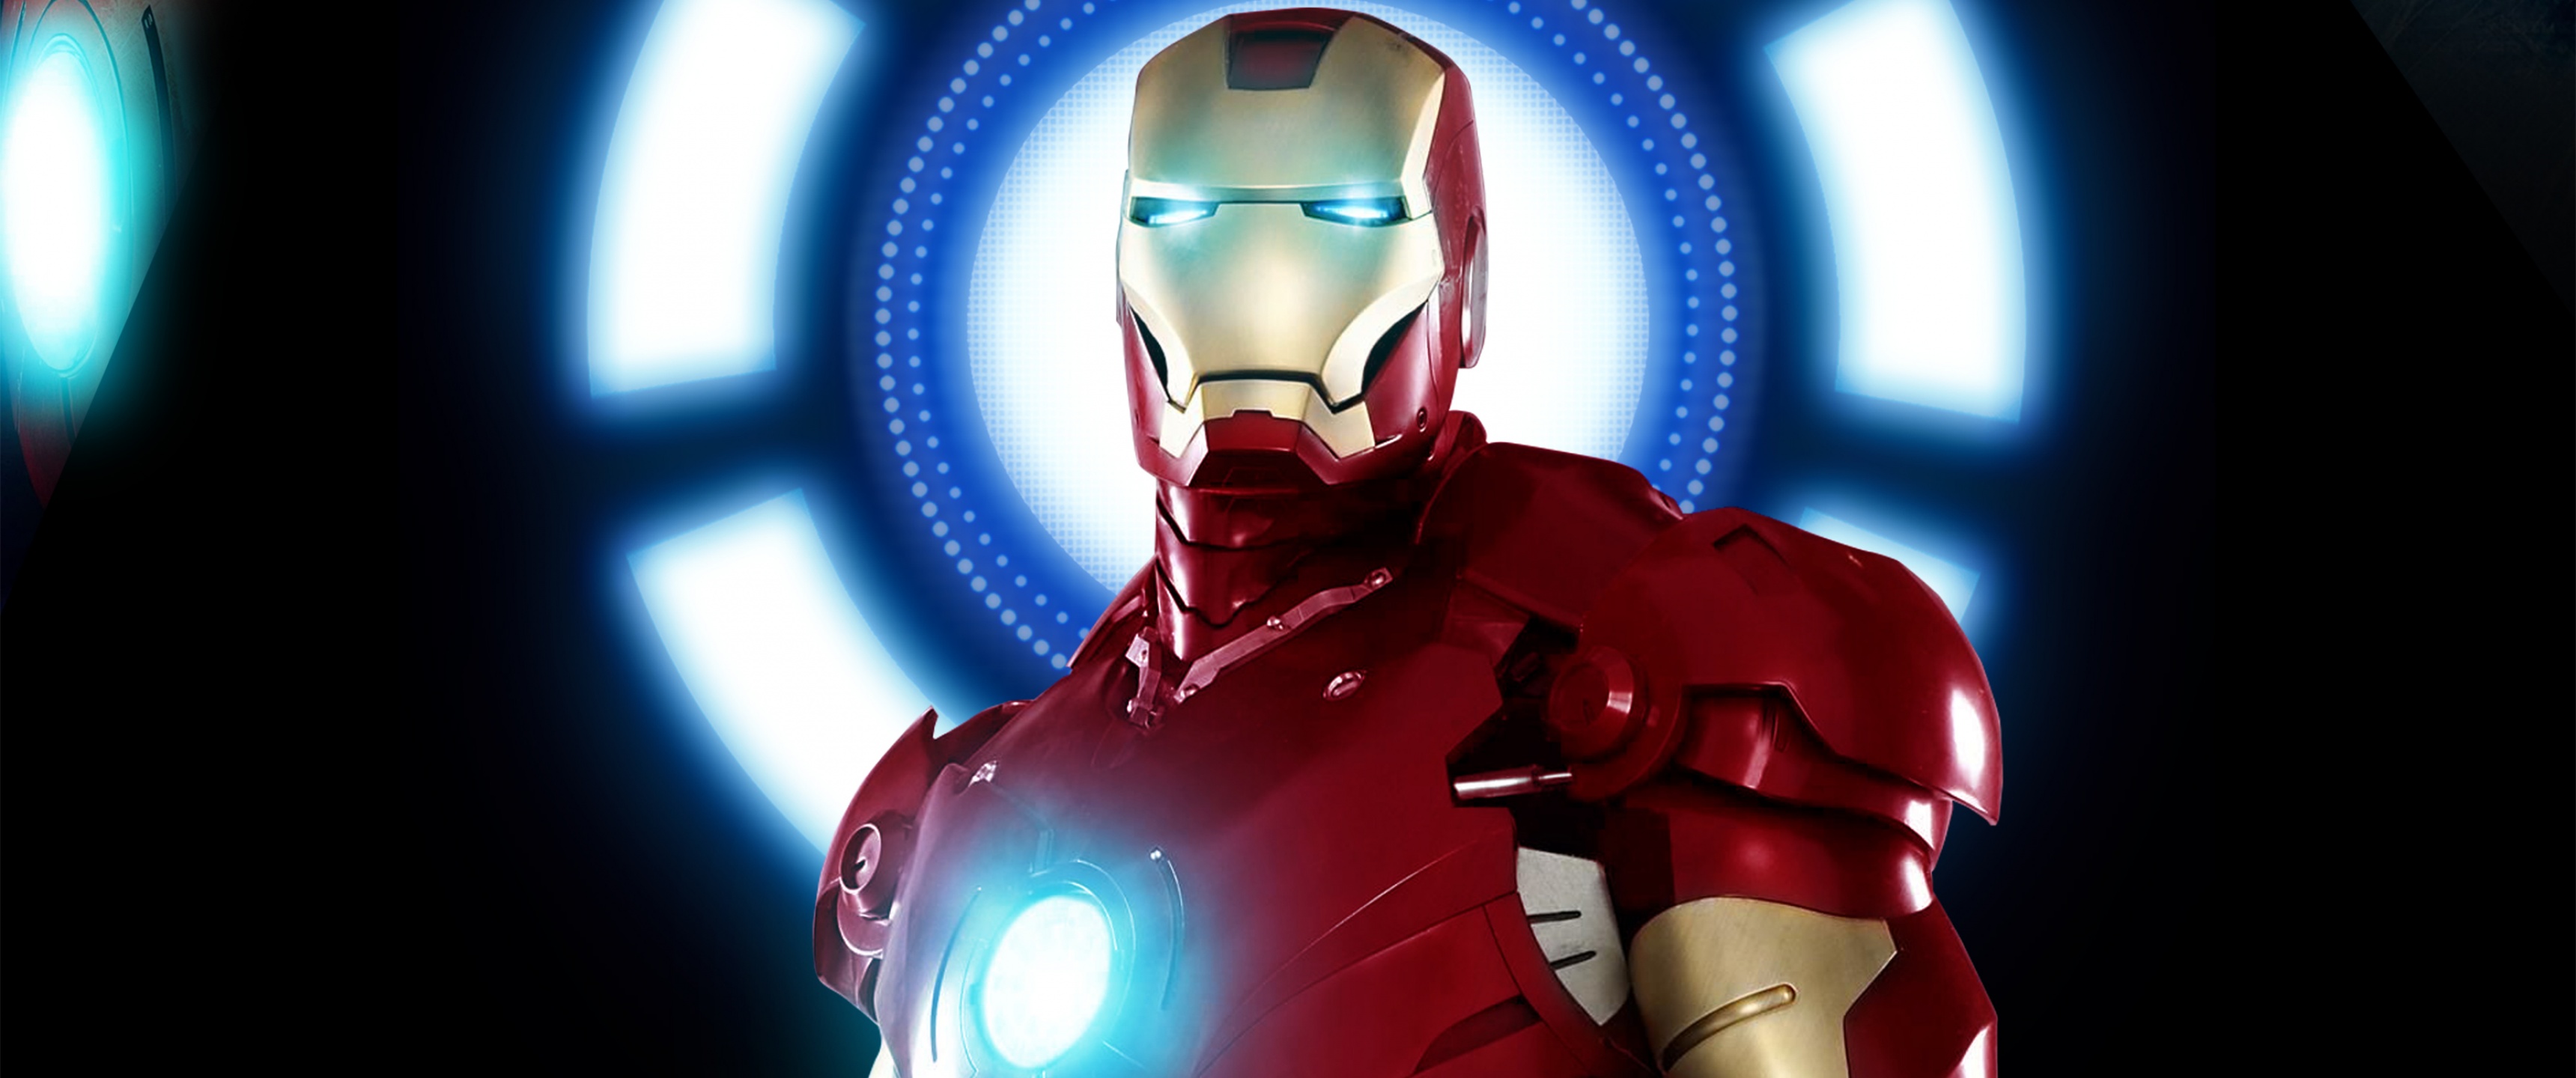 Chinh phục trái tim của người hâm mộ Marvel với hình nền Iron Man 4K Marvel đầy cuốn hút và sắc nét. Không chỉ đẹp mắt mà còn nói lên tính cách can đảm, táo bạo và sáng tạo của Tony Stark- người chơi với đấu trường sức mạnh. Hãy là tín đồ của Marvel và dành một góc nhìn hoàn toàn khác trên màn hình của bạn.